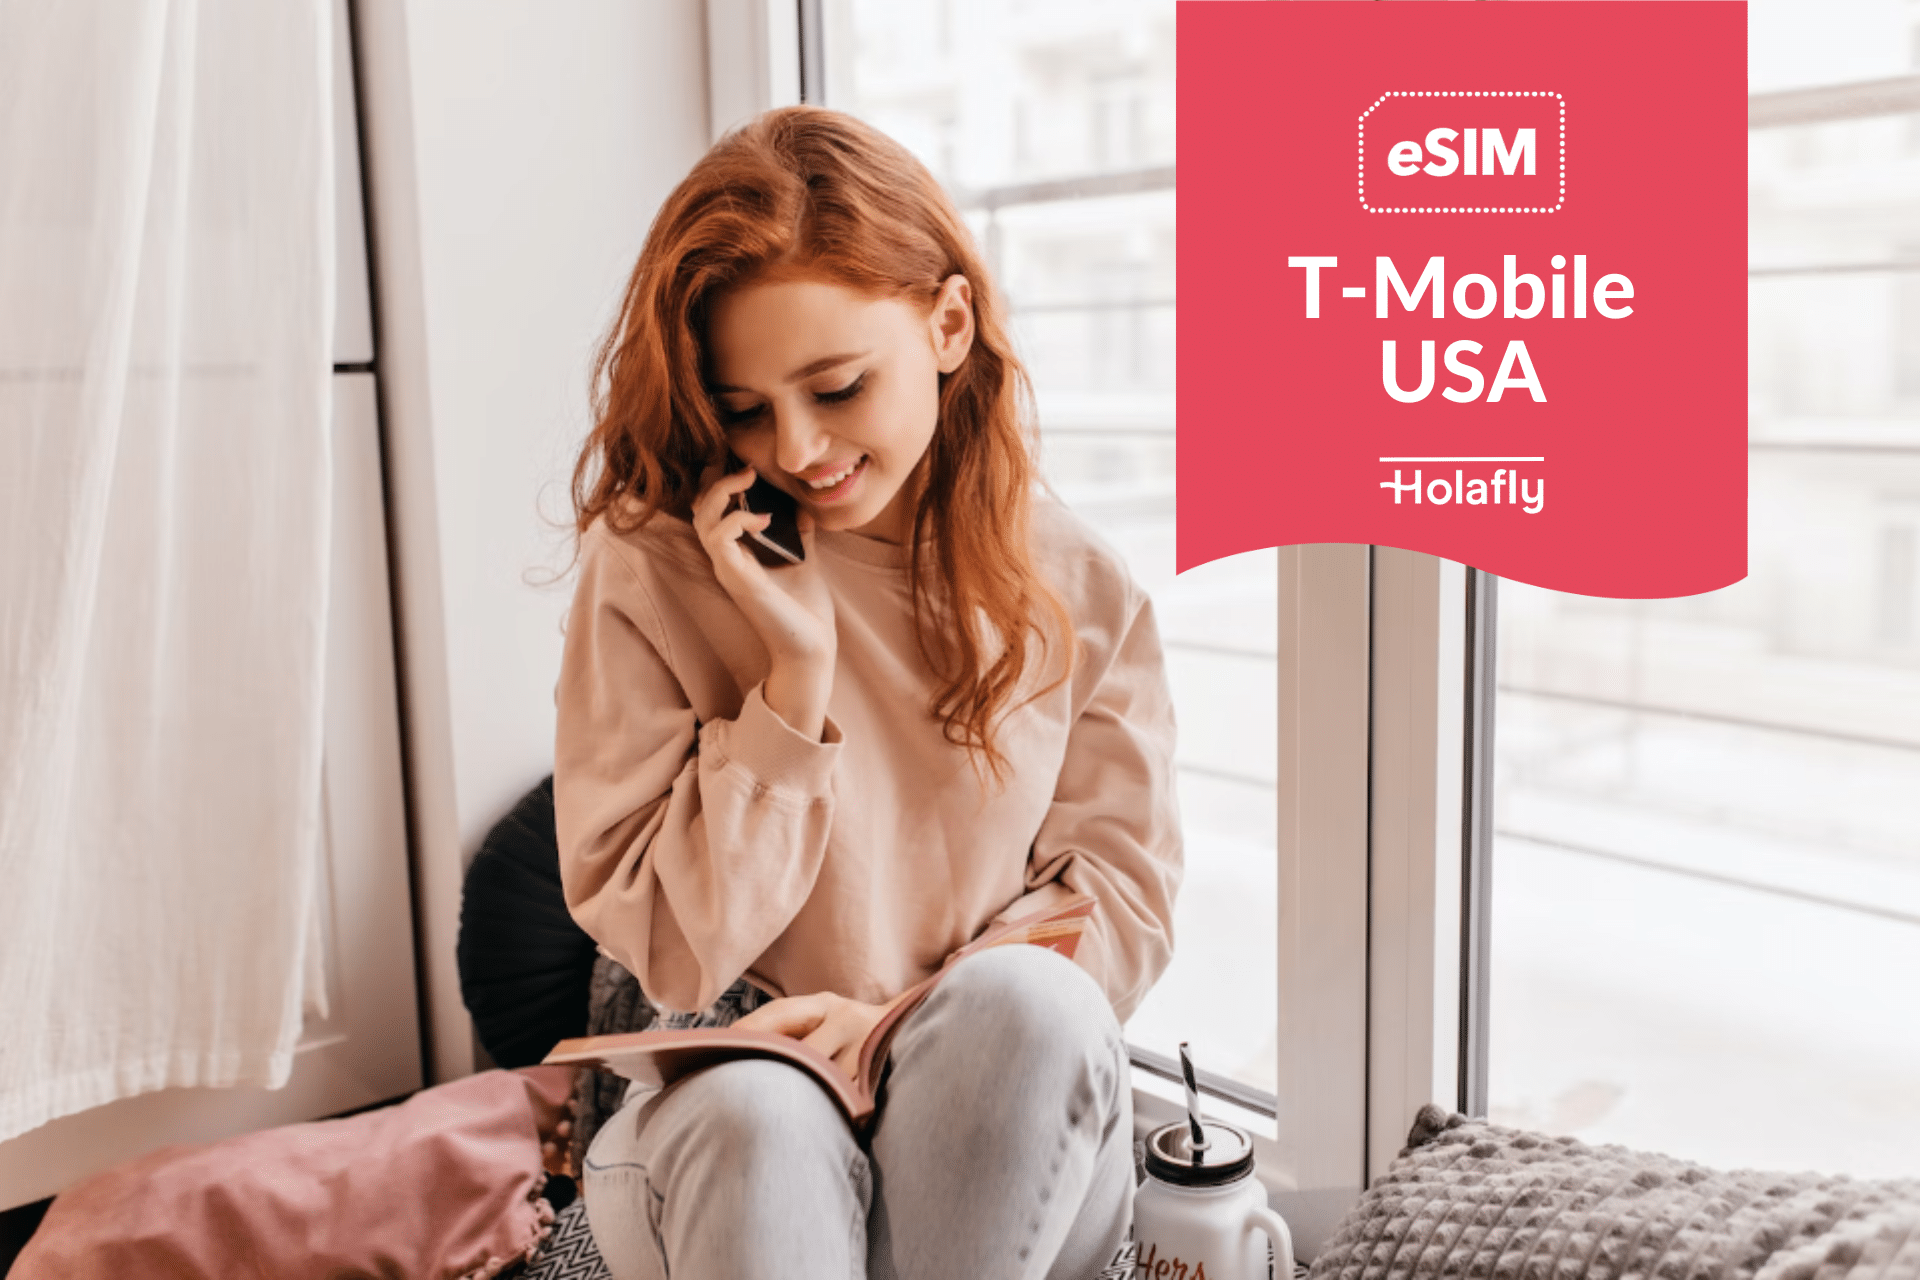 Tarjeta SIM T-Mobile: precio, ¿Cómo conseguir y activar? - Roami